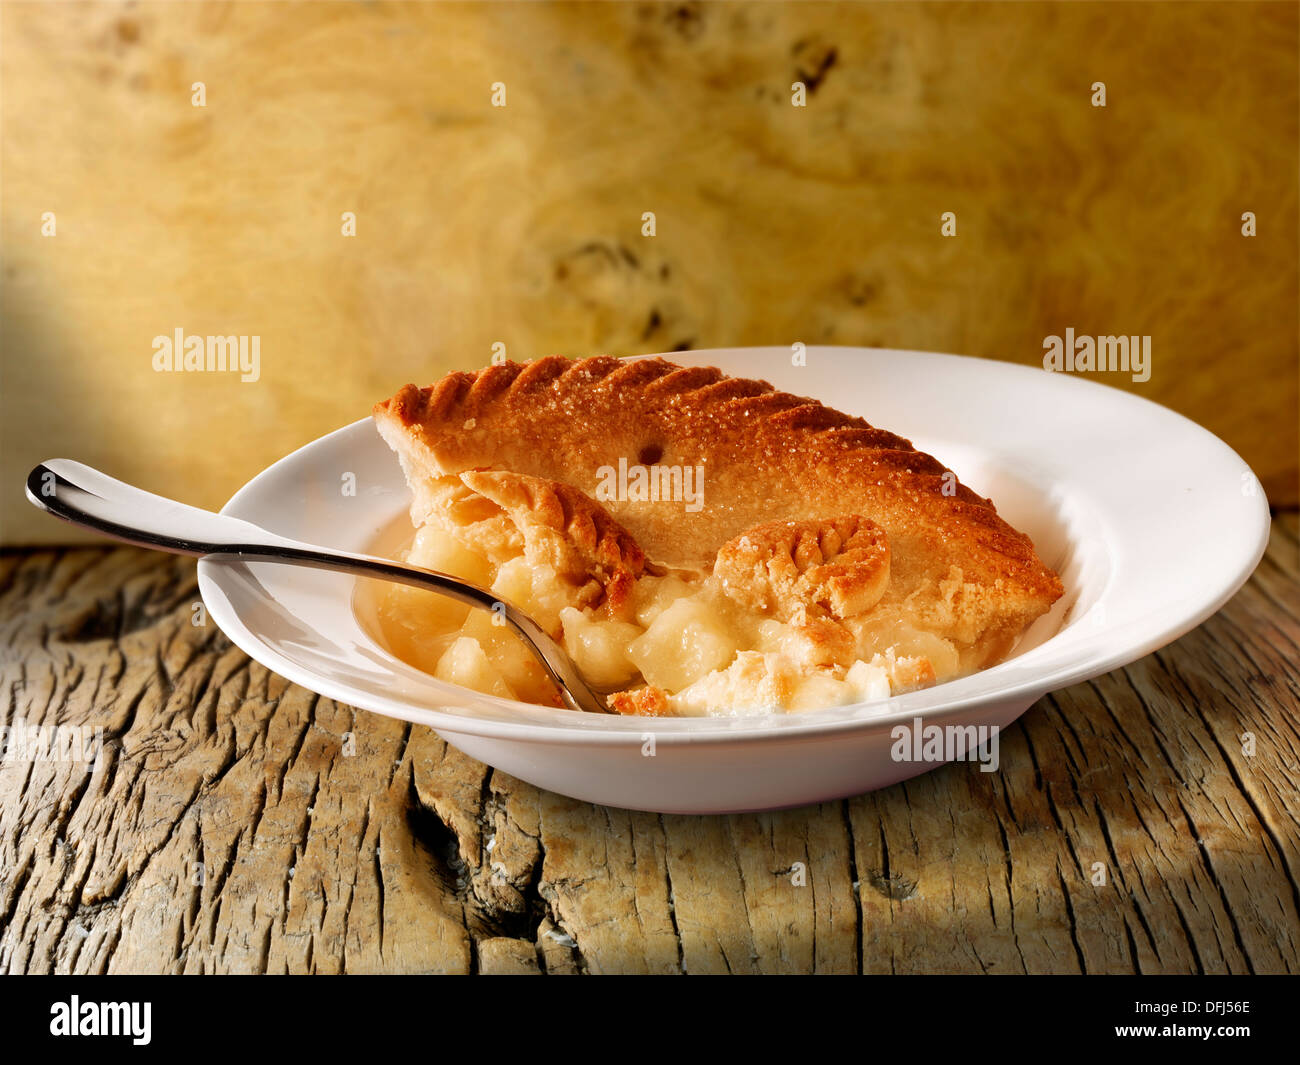 La traditionnelle tarte aux pommes et crème anglaise au lait servi dans un bol sur une table en bois Banque D'Images